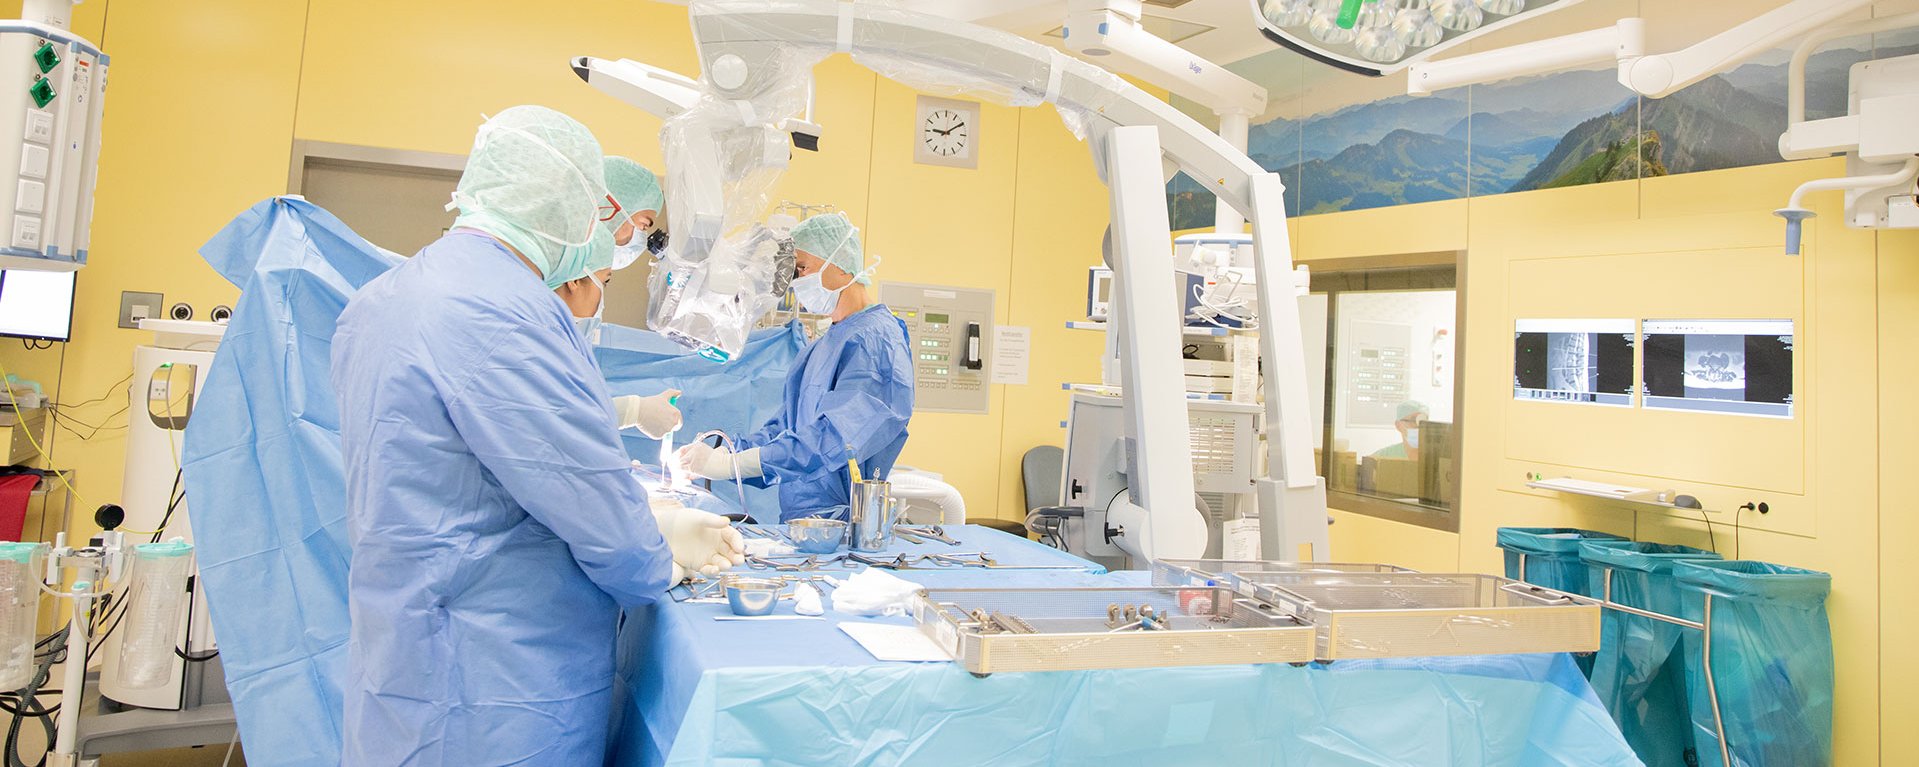 Neurochirurgie im Klinikverbund Allgäu im Operationssaal